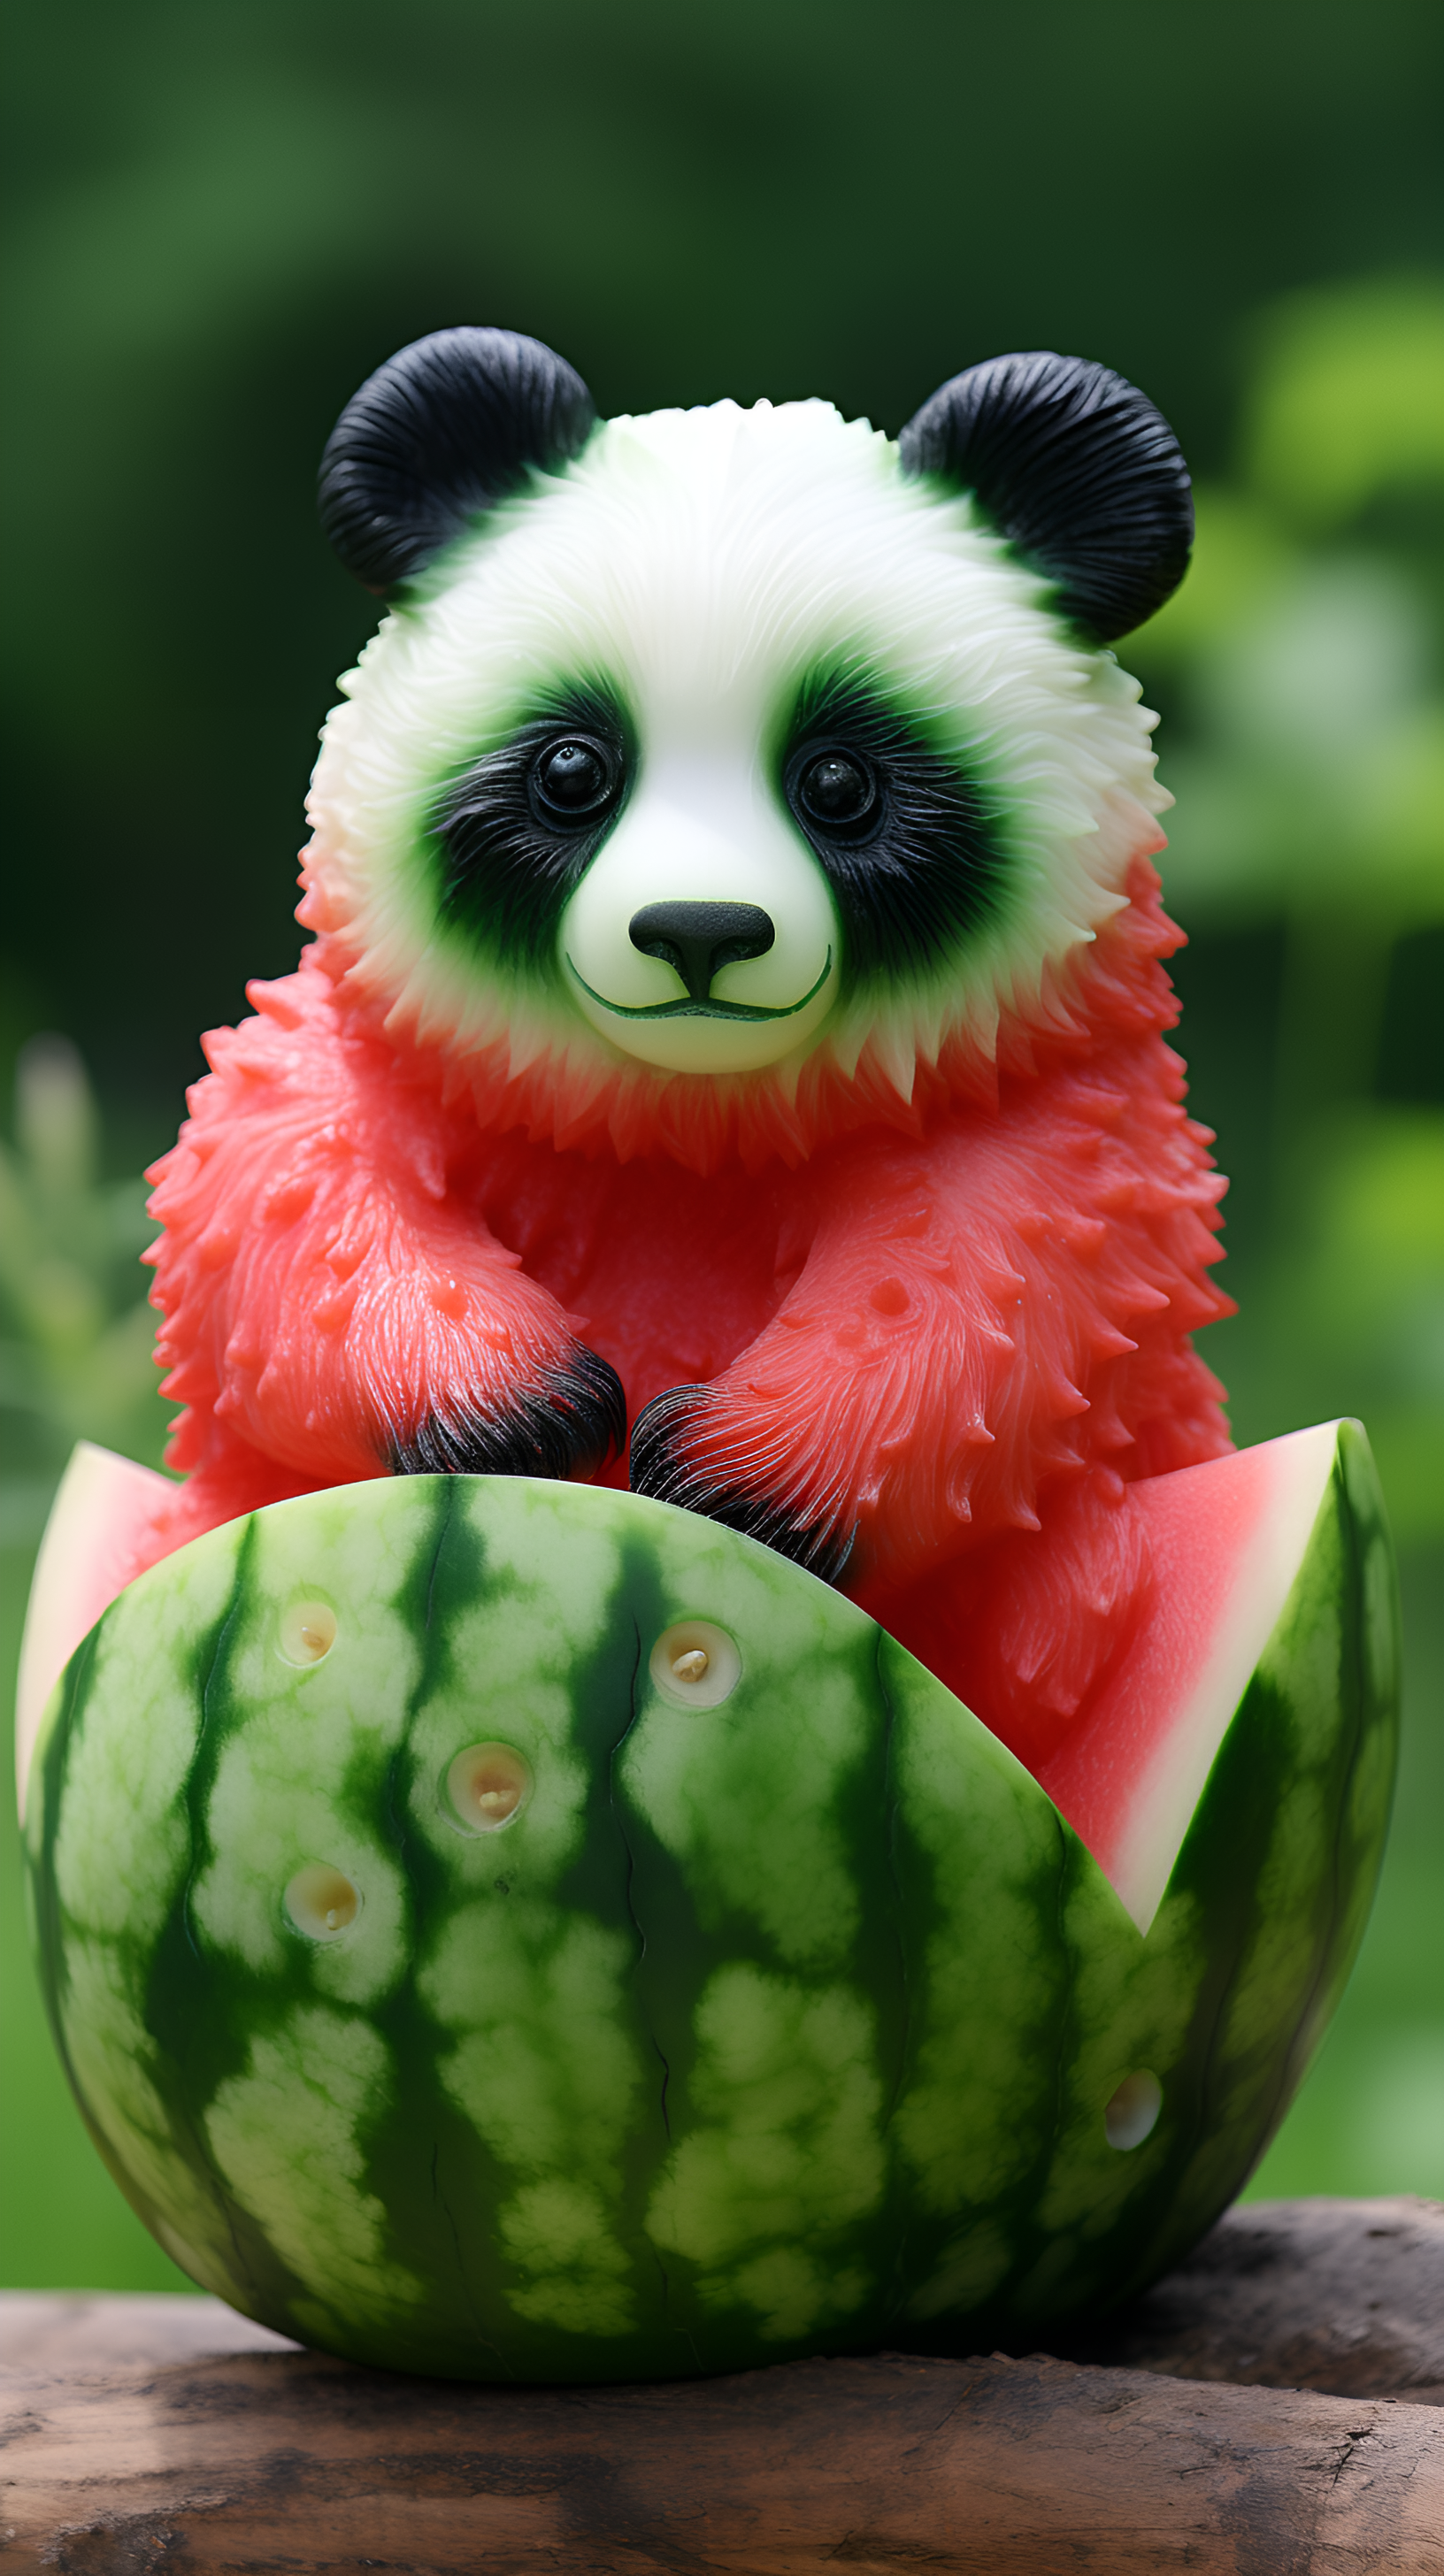 水果雕刻的熊猫,可爱又呆萌